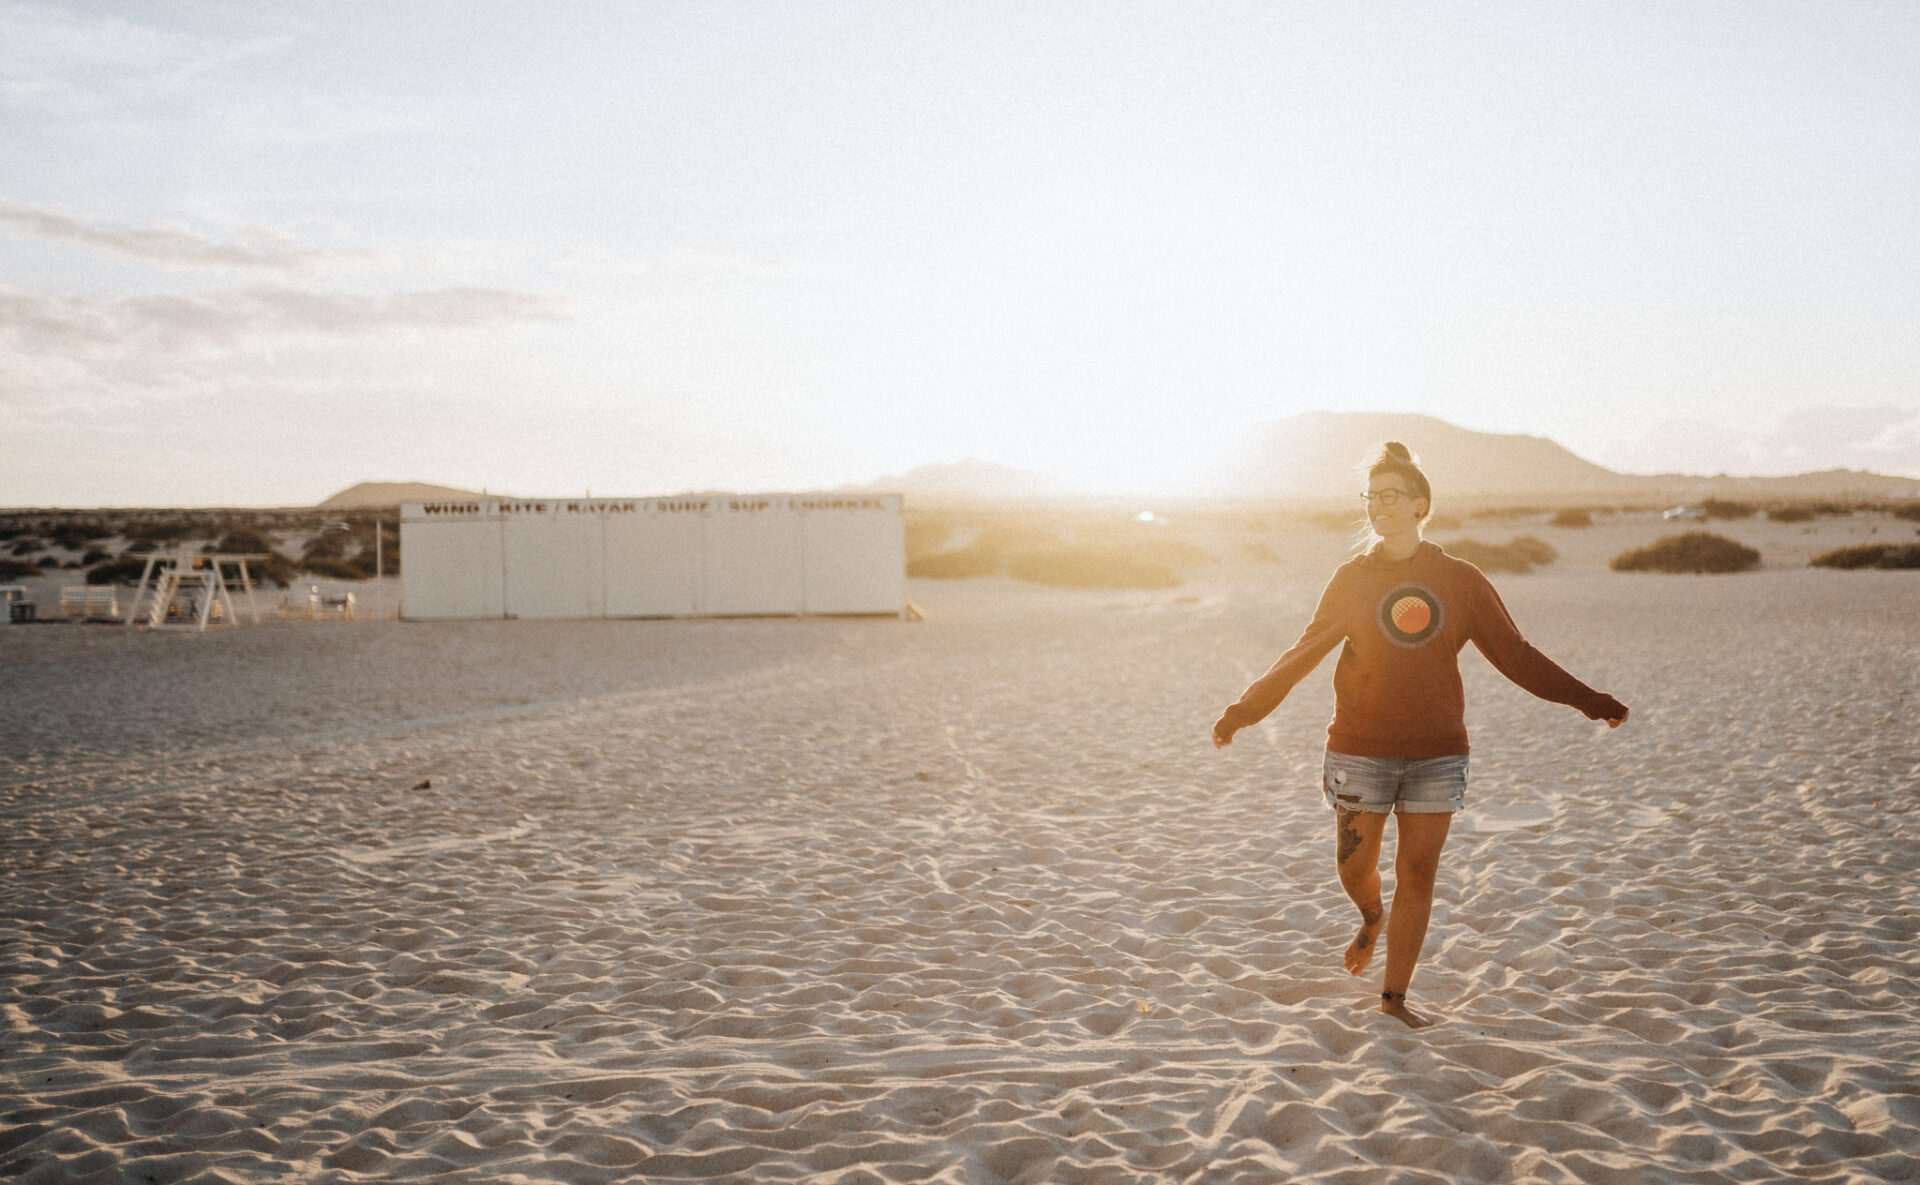 Gegenlichtaufnahmen beim Porträt Foto von Dominic Wolf, zu sehen ist Lisa Ludwig am Strand von Corallejo auf Fuerteventura während sie im Sand mit dem roten Pullover und der Jeansshorts tanzt